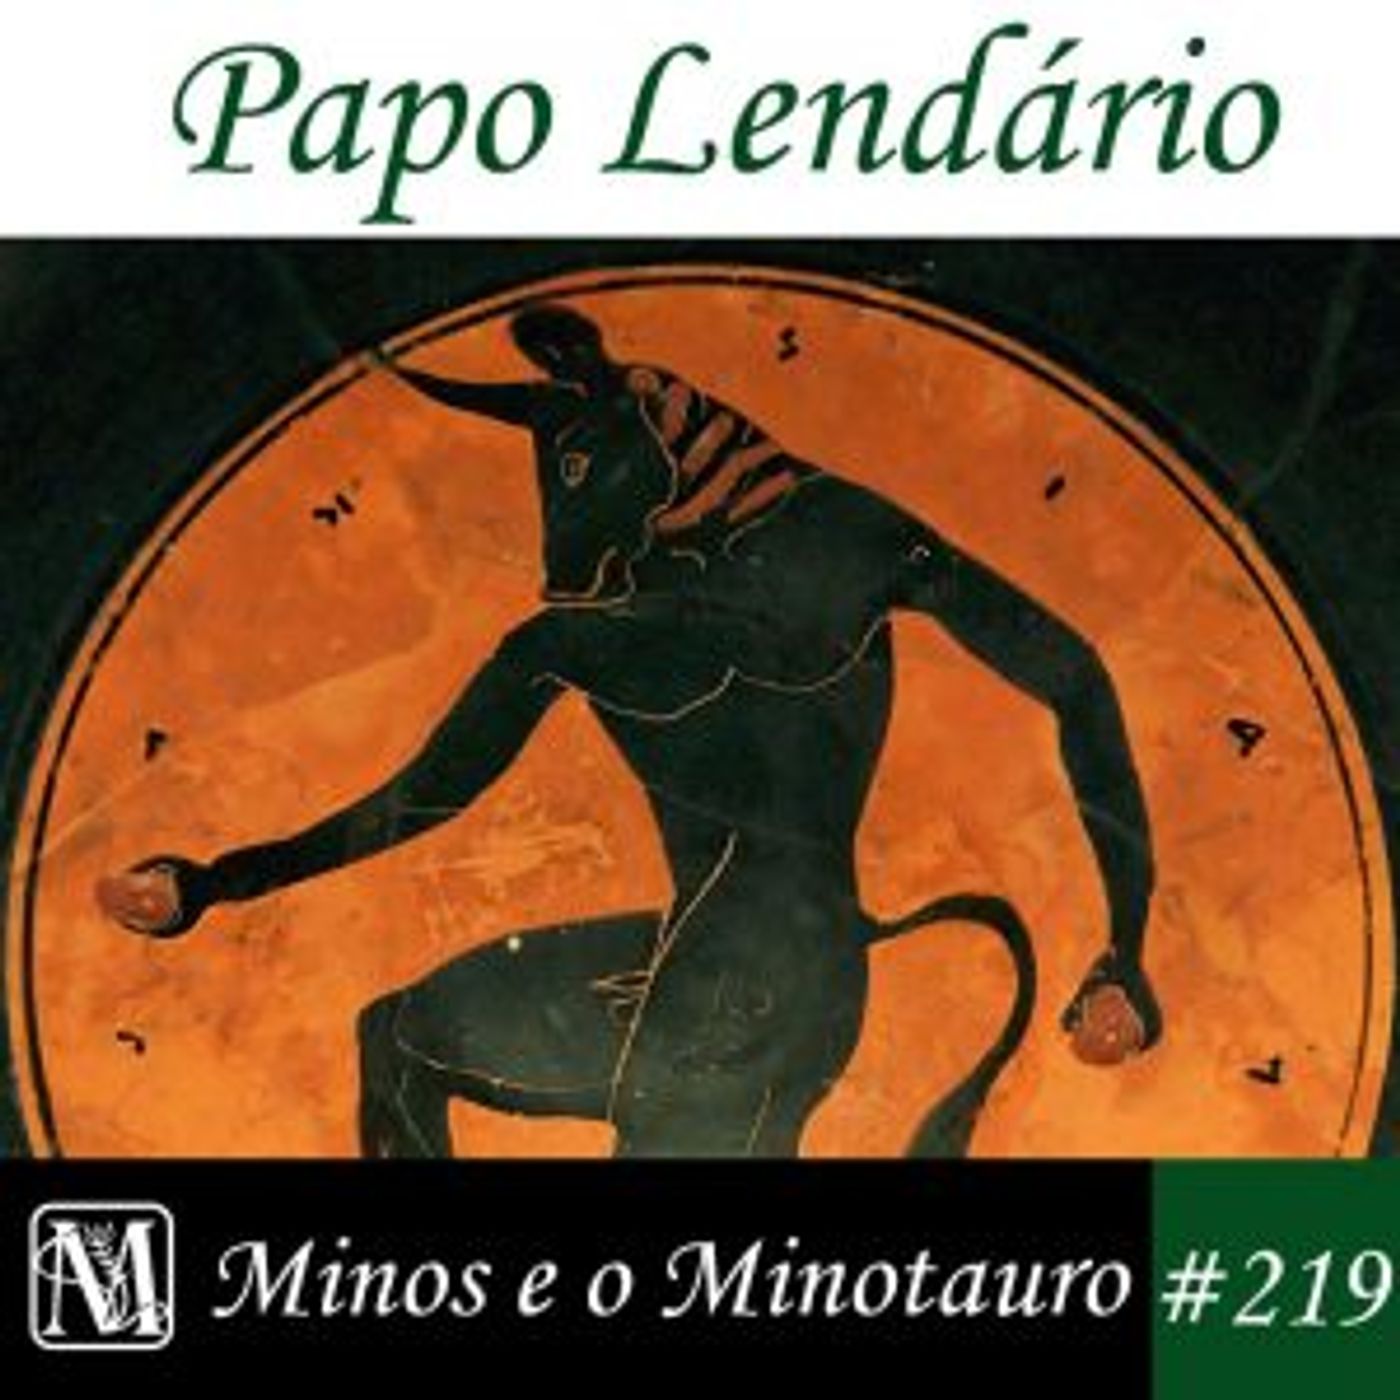 Papo Lendário #219 – Minos e o Minotauro